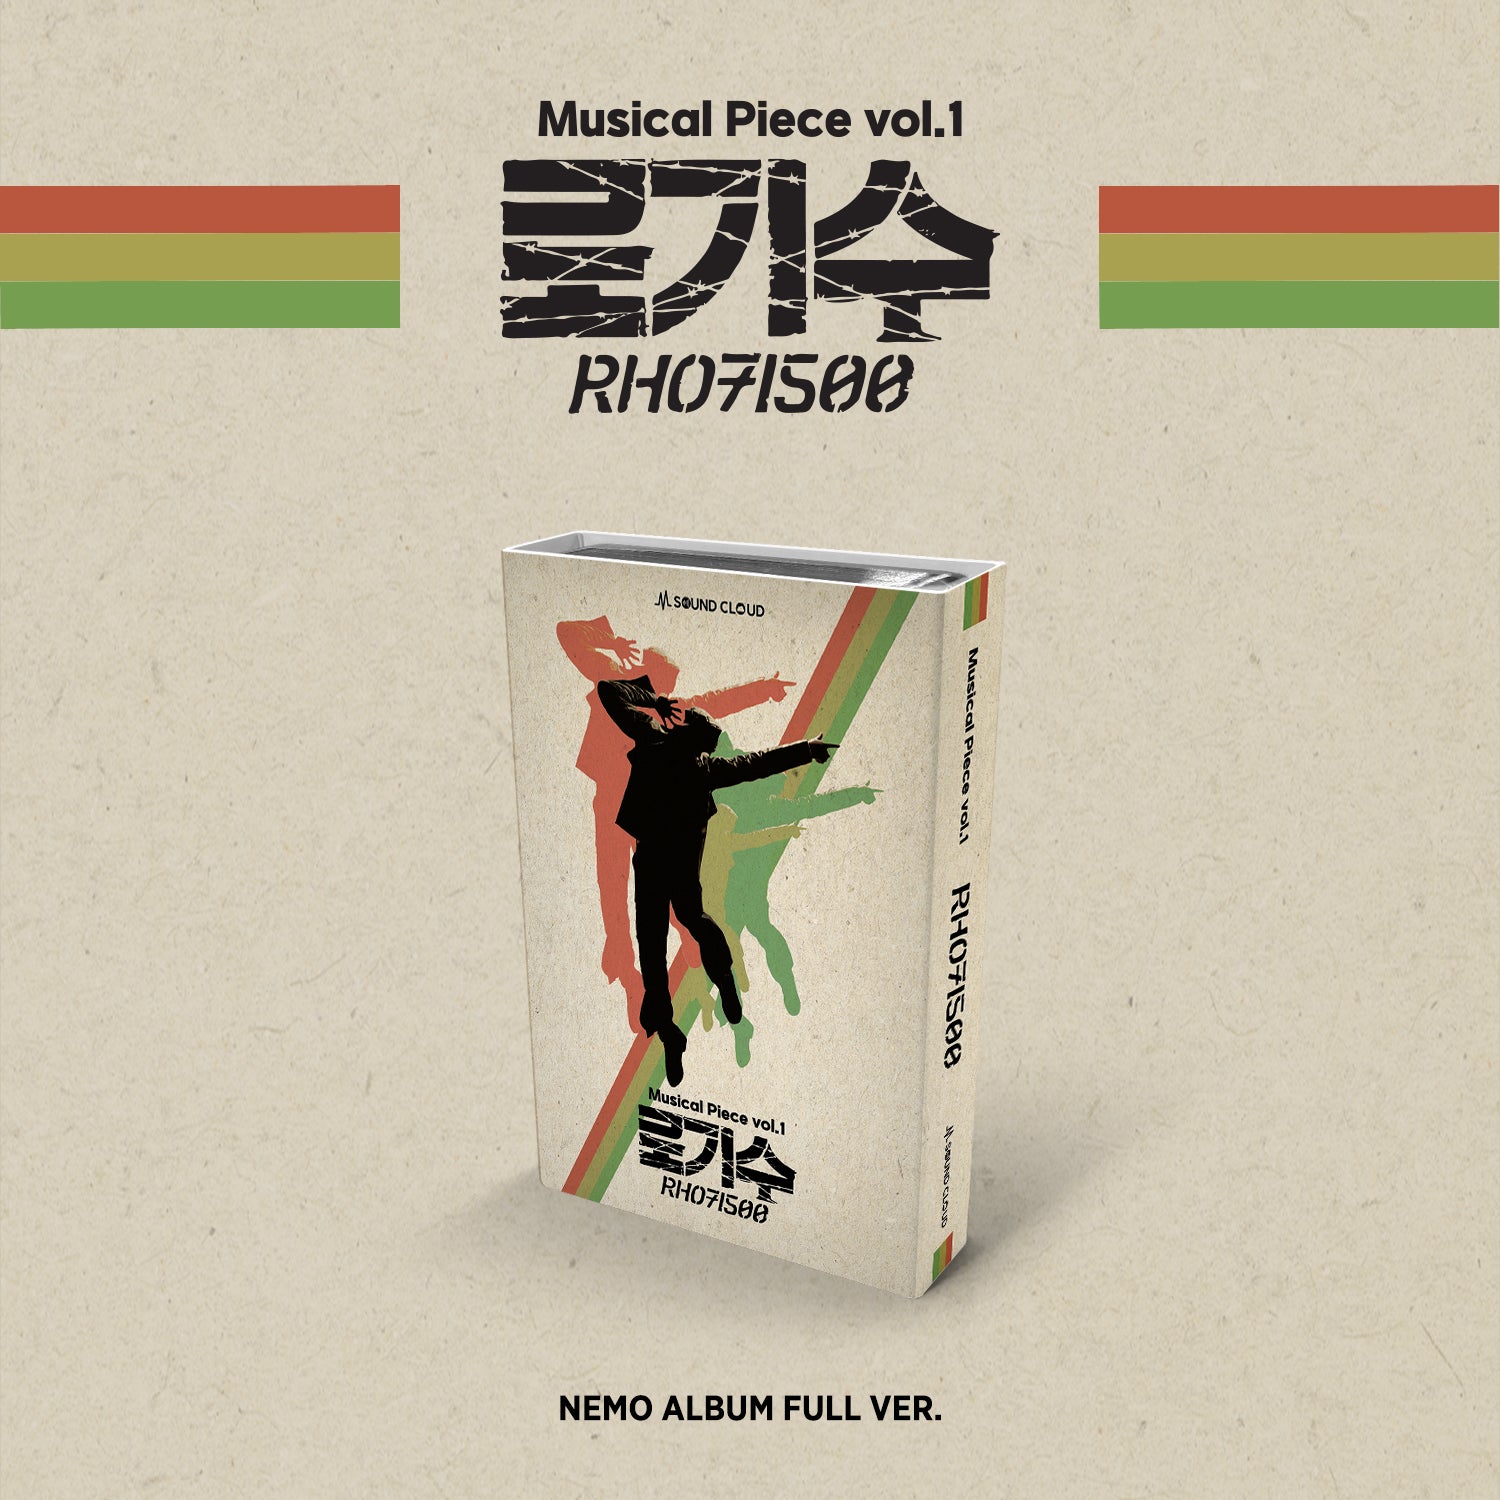 Musical Piece vol.1 RH071500 (Nemo Album Full ver.)